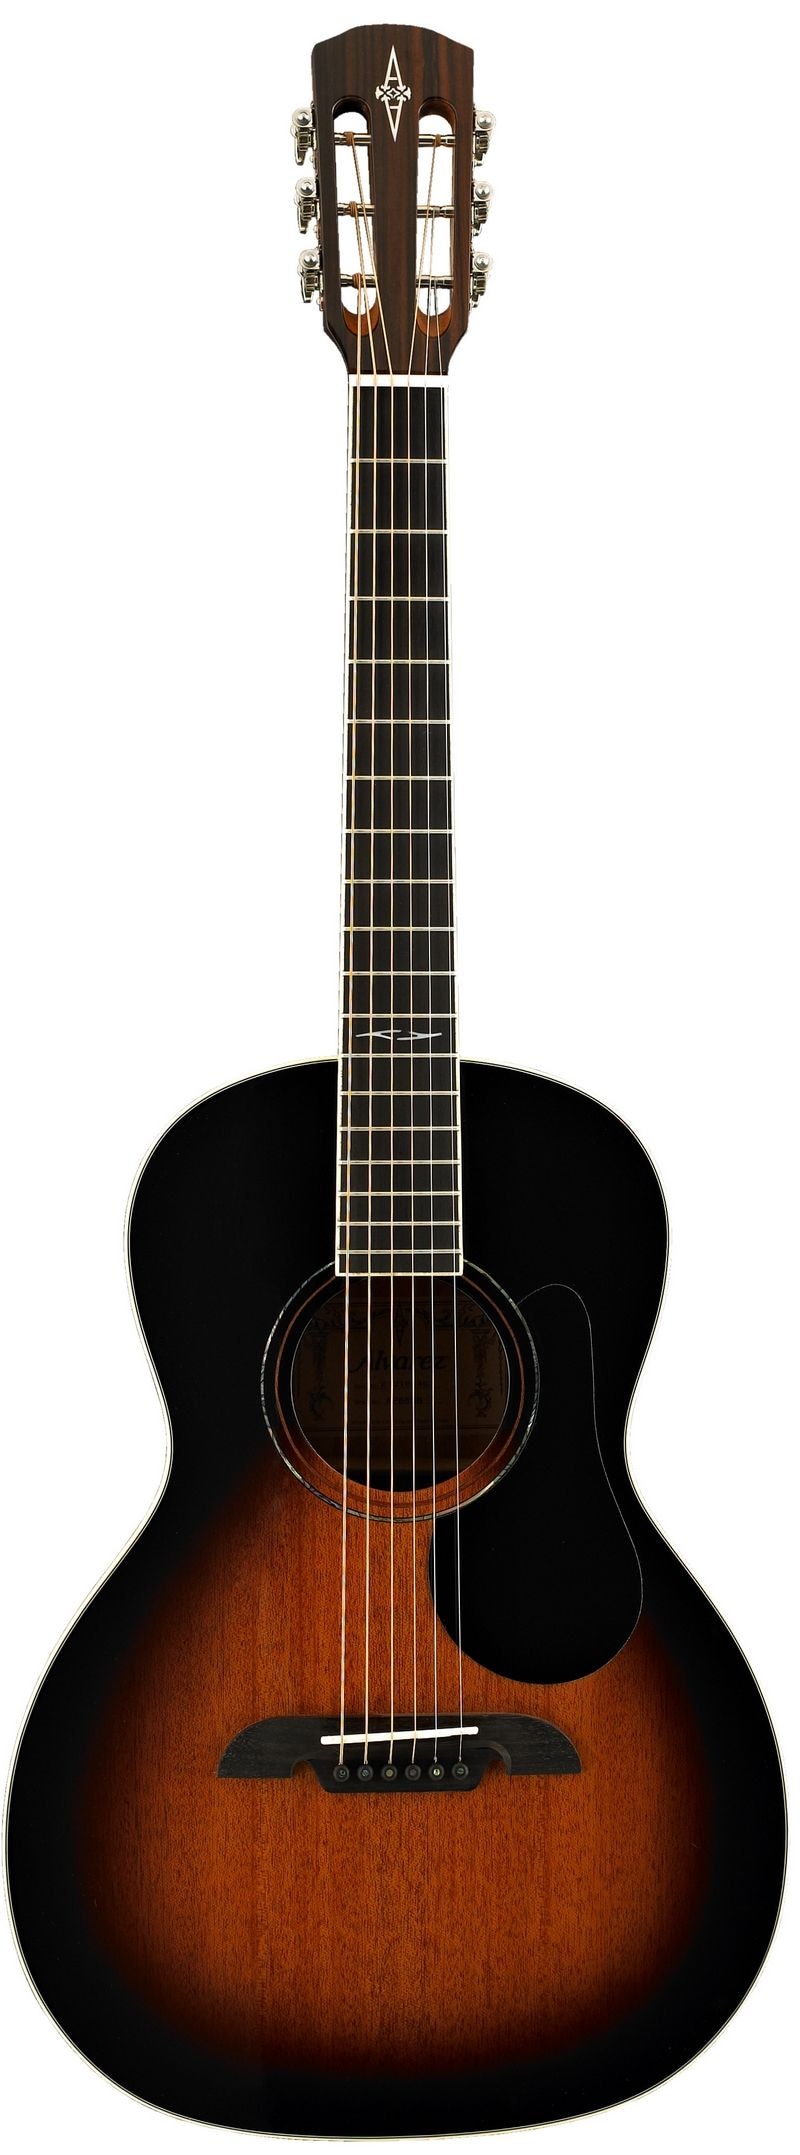 Alvarez AP66SB акустическая гитара